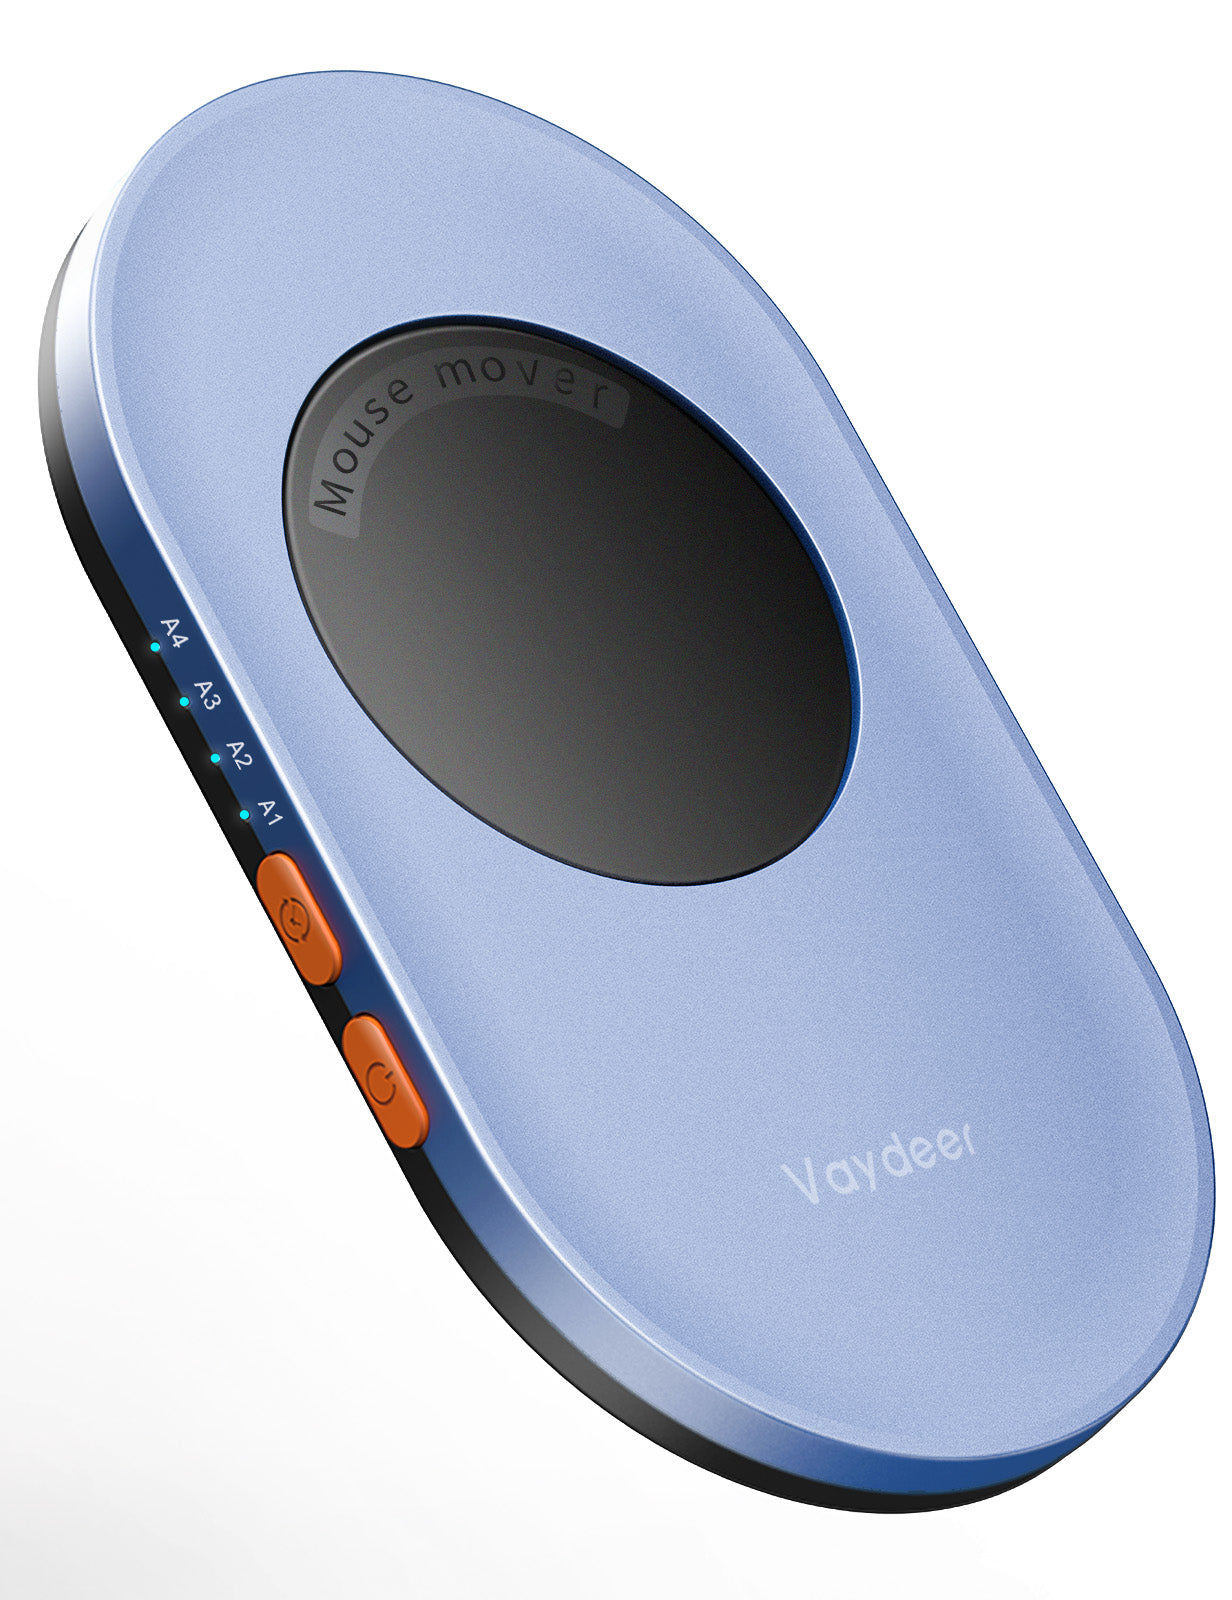 Vaydeer Ultra Slim Mechanical Mouse Mover